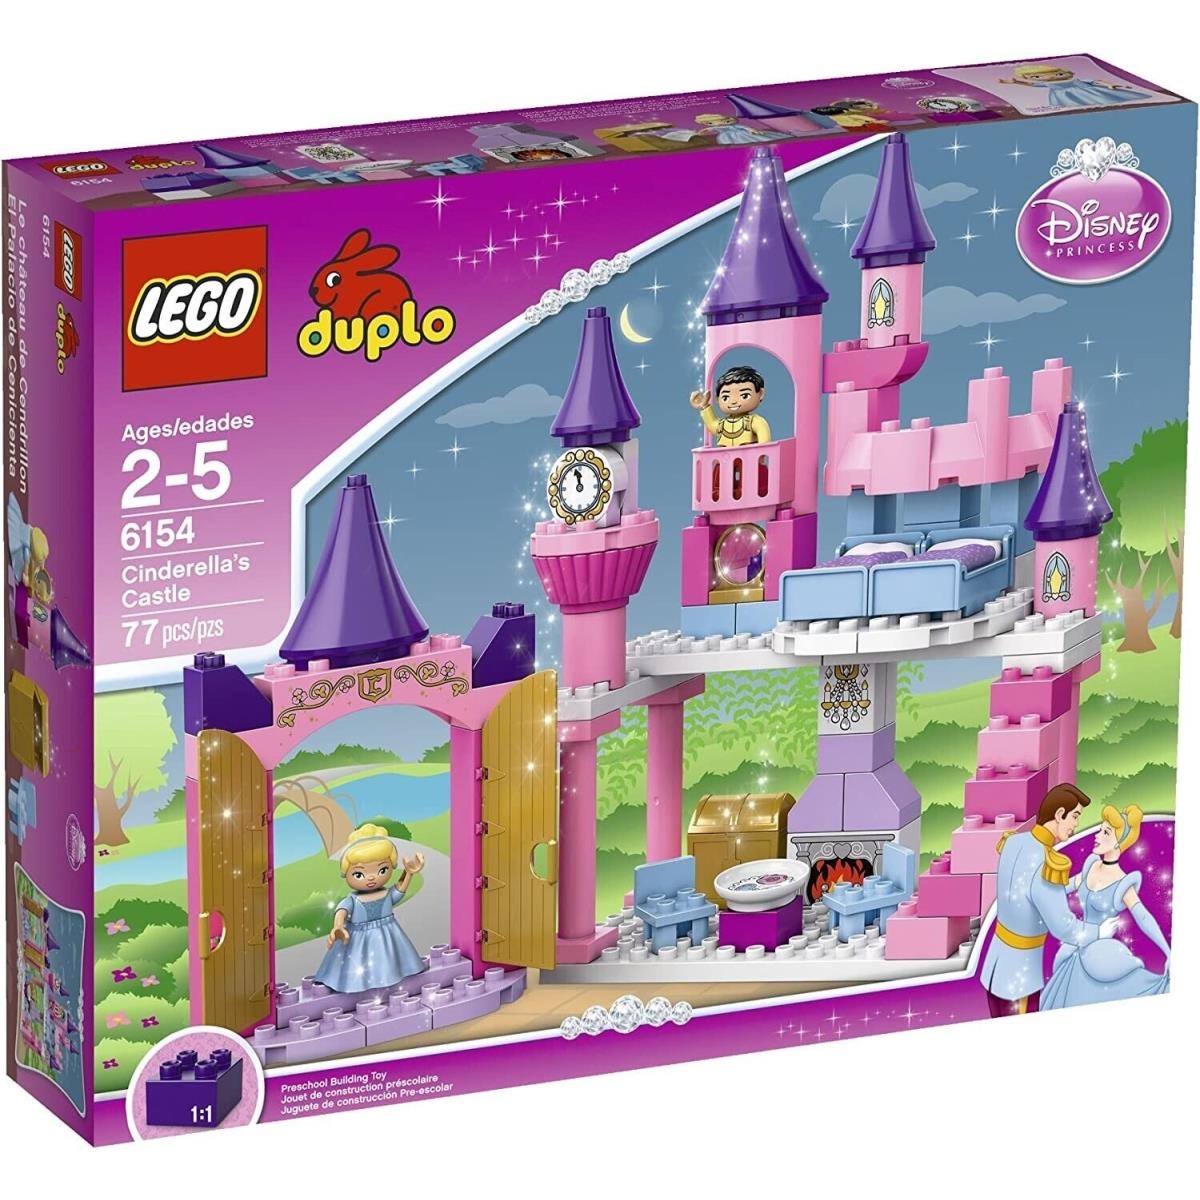 Lego Duplo 6154 Princess Cinderella s Castle Hard to Find Vintage Set